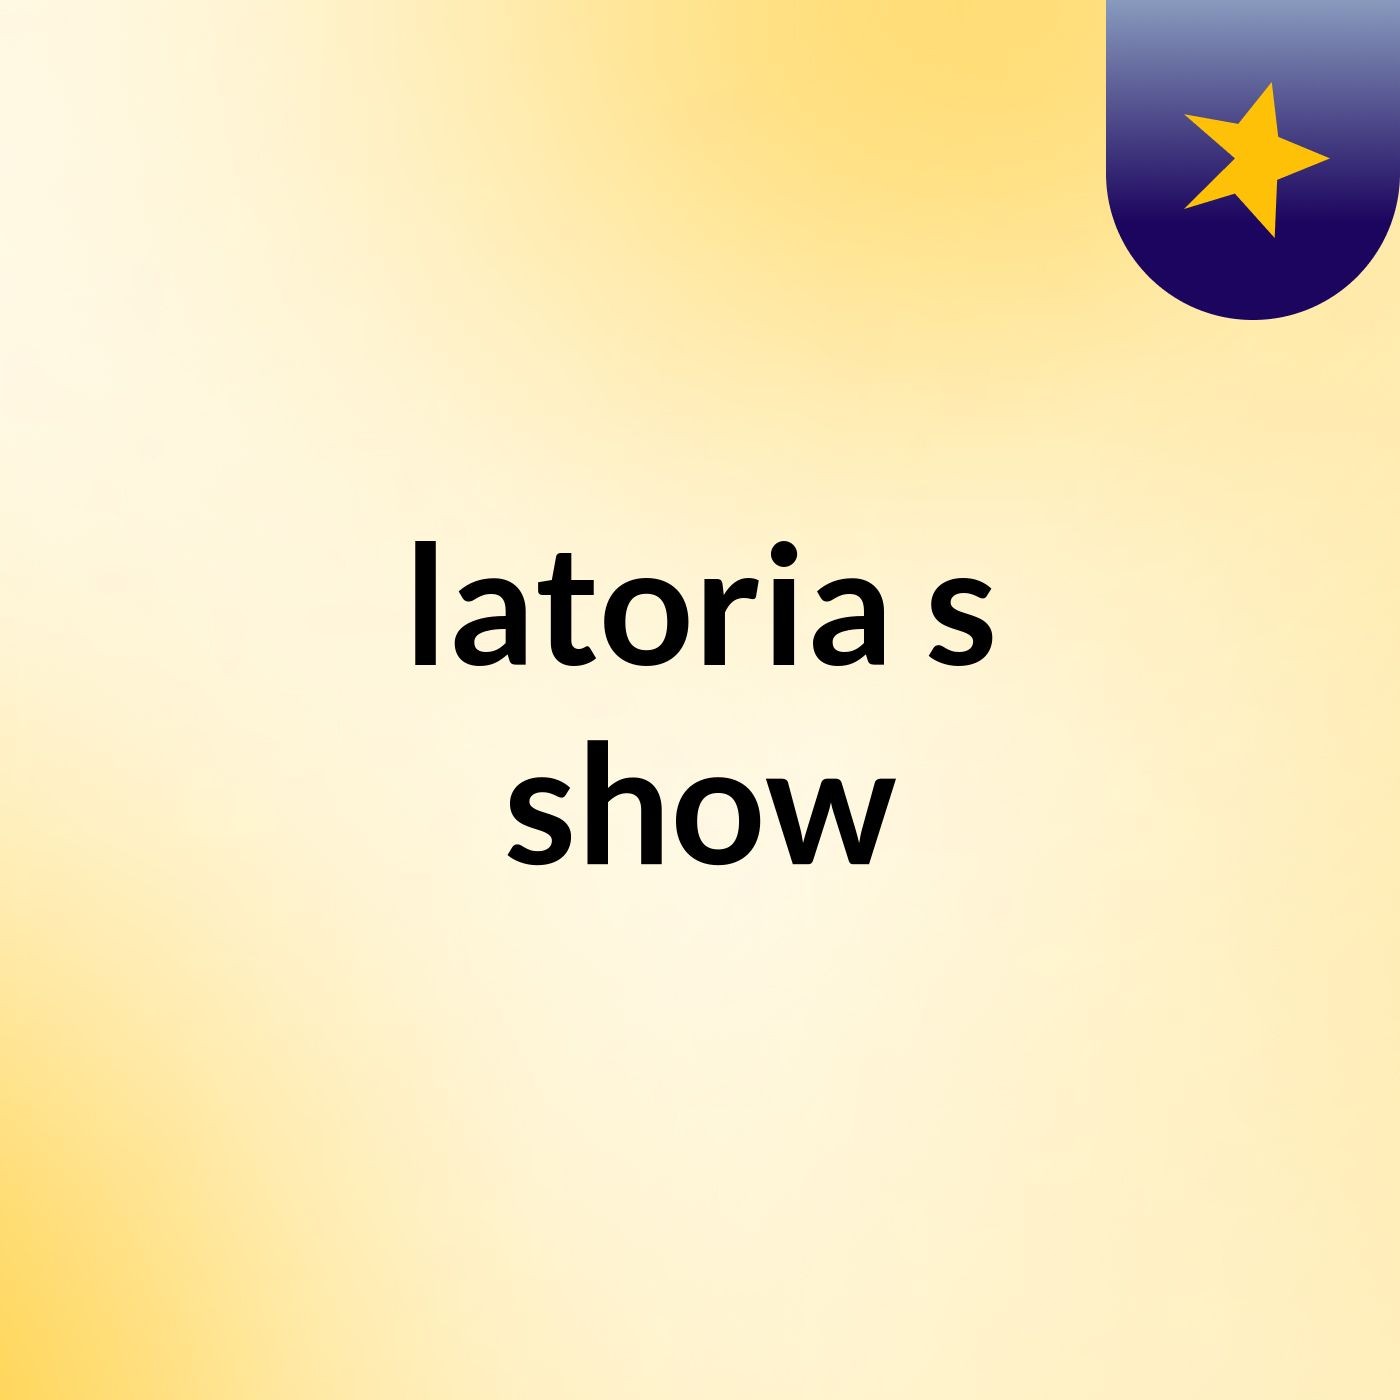 latoria's show